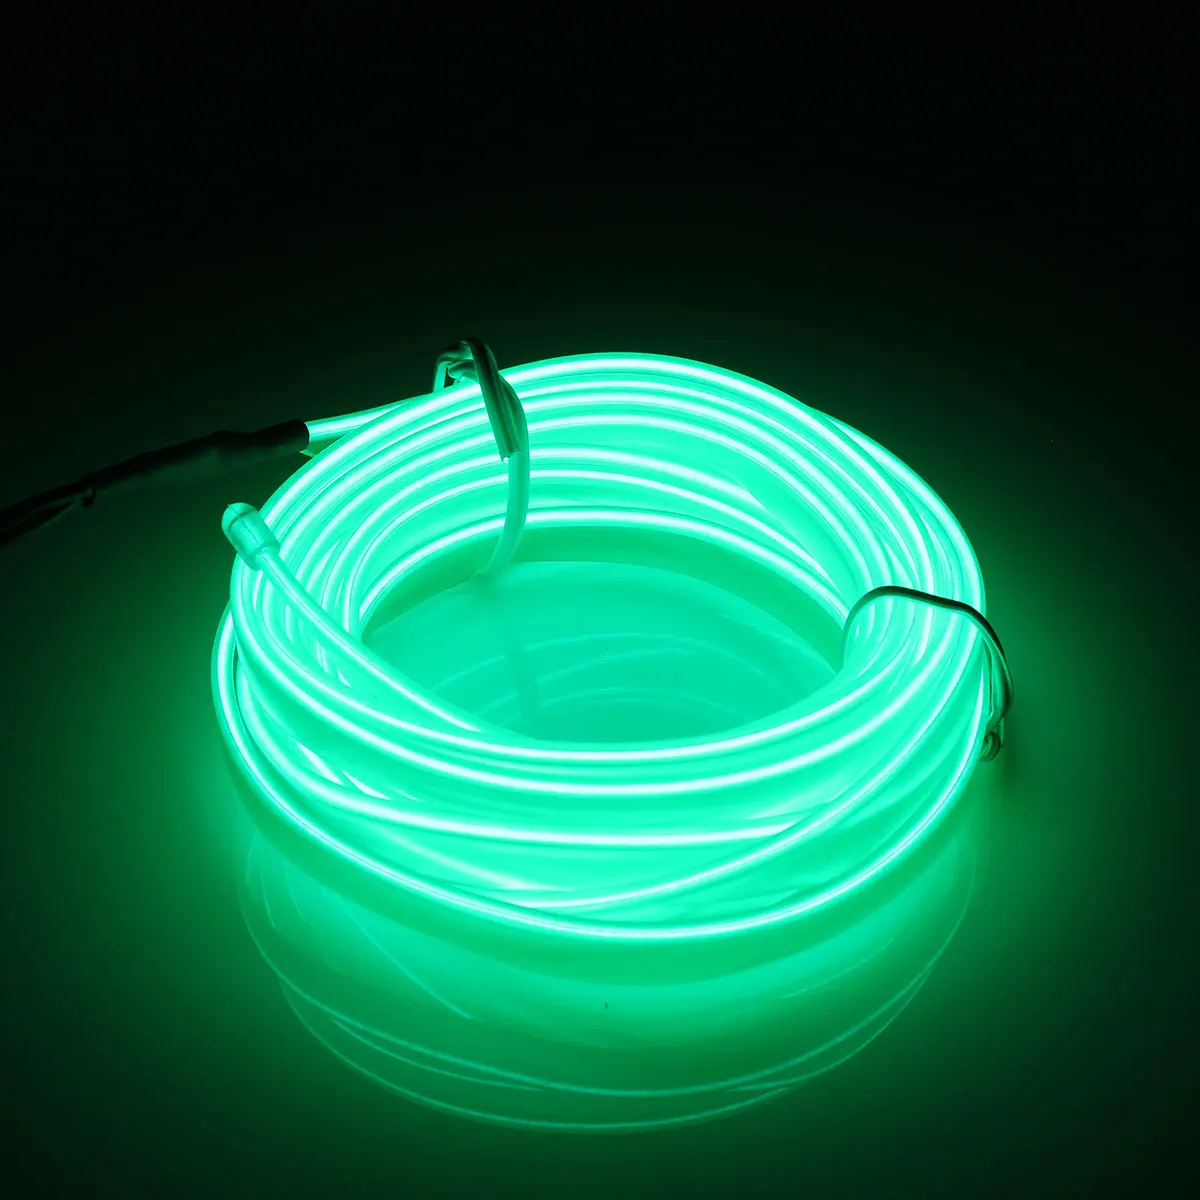 Smuxi 2 м светодиодный неоновый EL провод светящаяся полоса светильник веревочный контроллер автомобильный Декор Танцевальная вечеринка водонепроницаемый RGB многоцветный опционально - Испускаемый цвет: Green